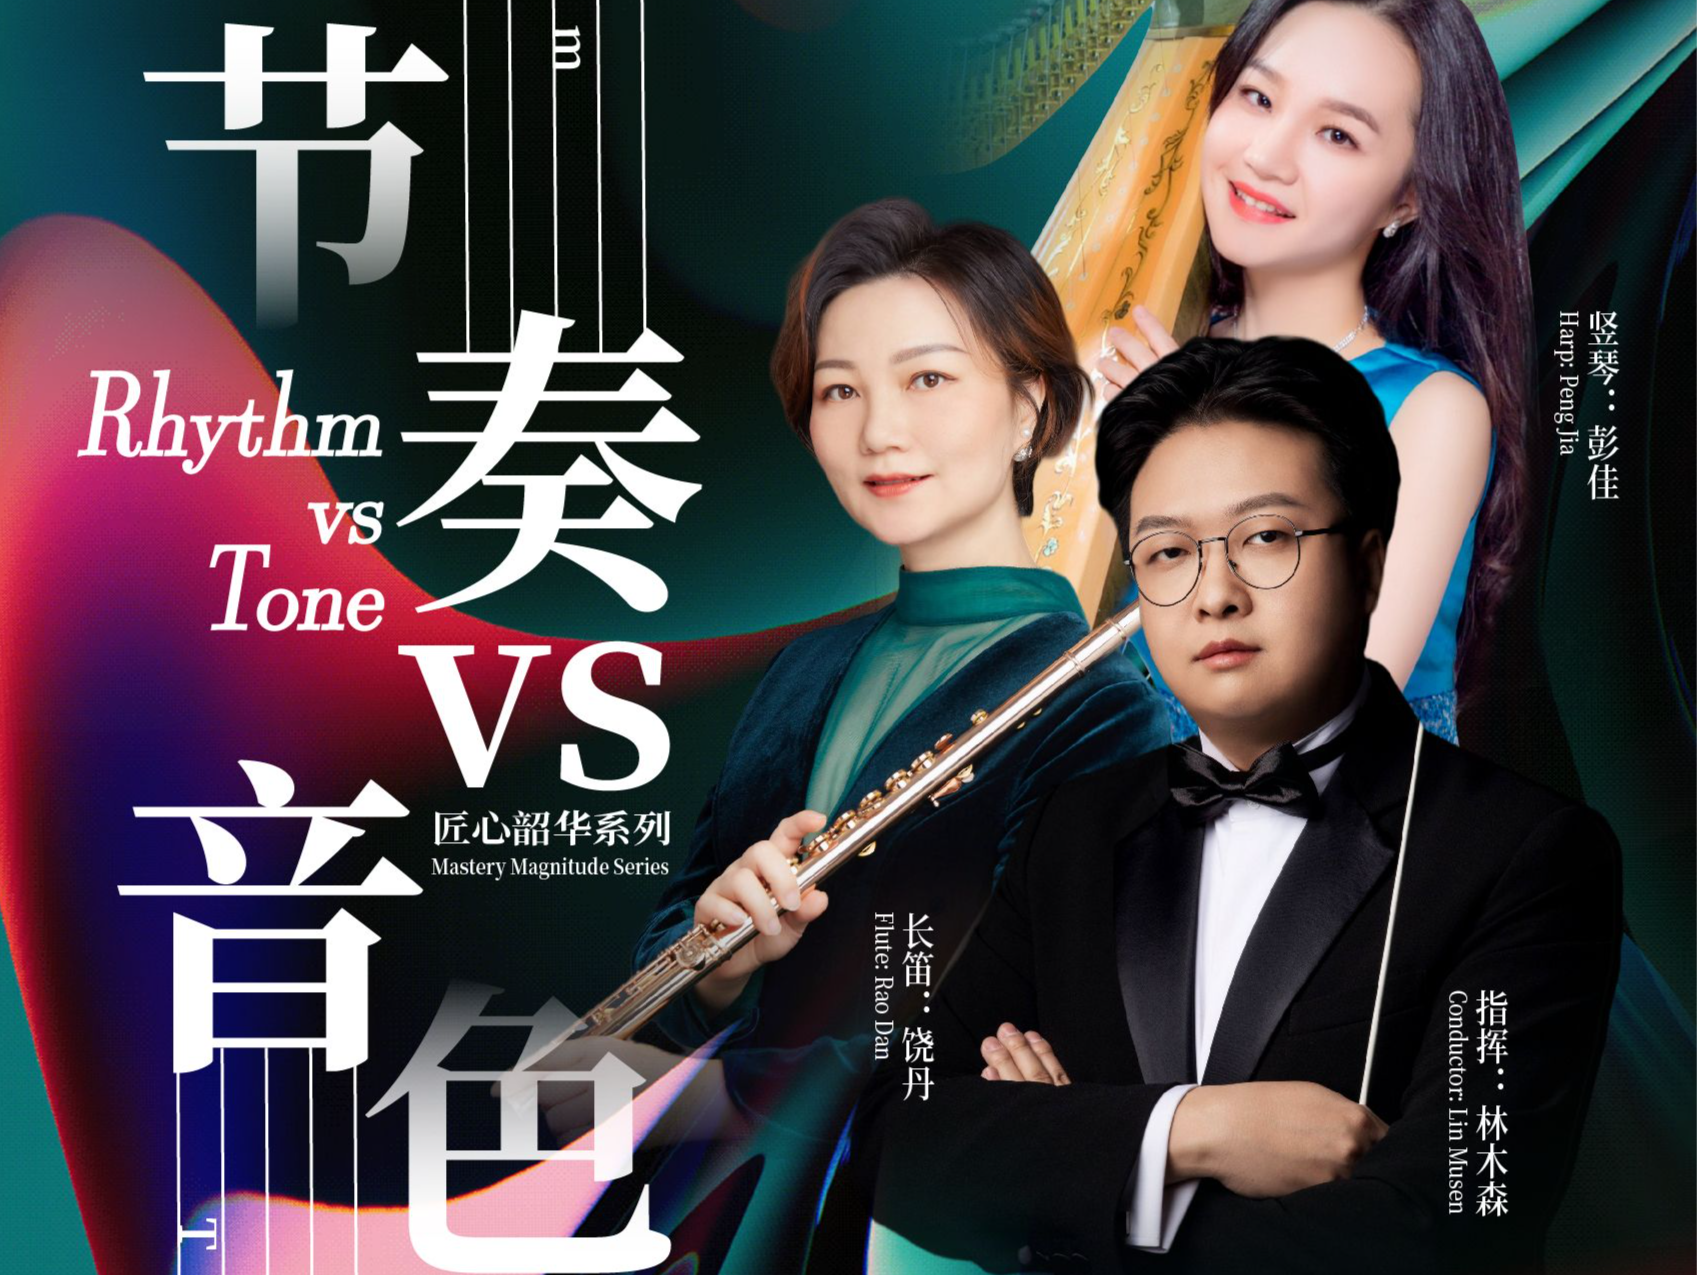 节奏vs音色 深圳交响乐团将带来古典乐派与浪漫乐派的瑰丽碰撞